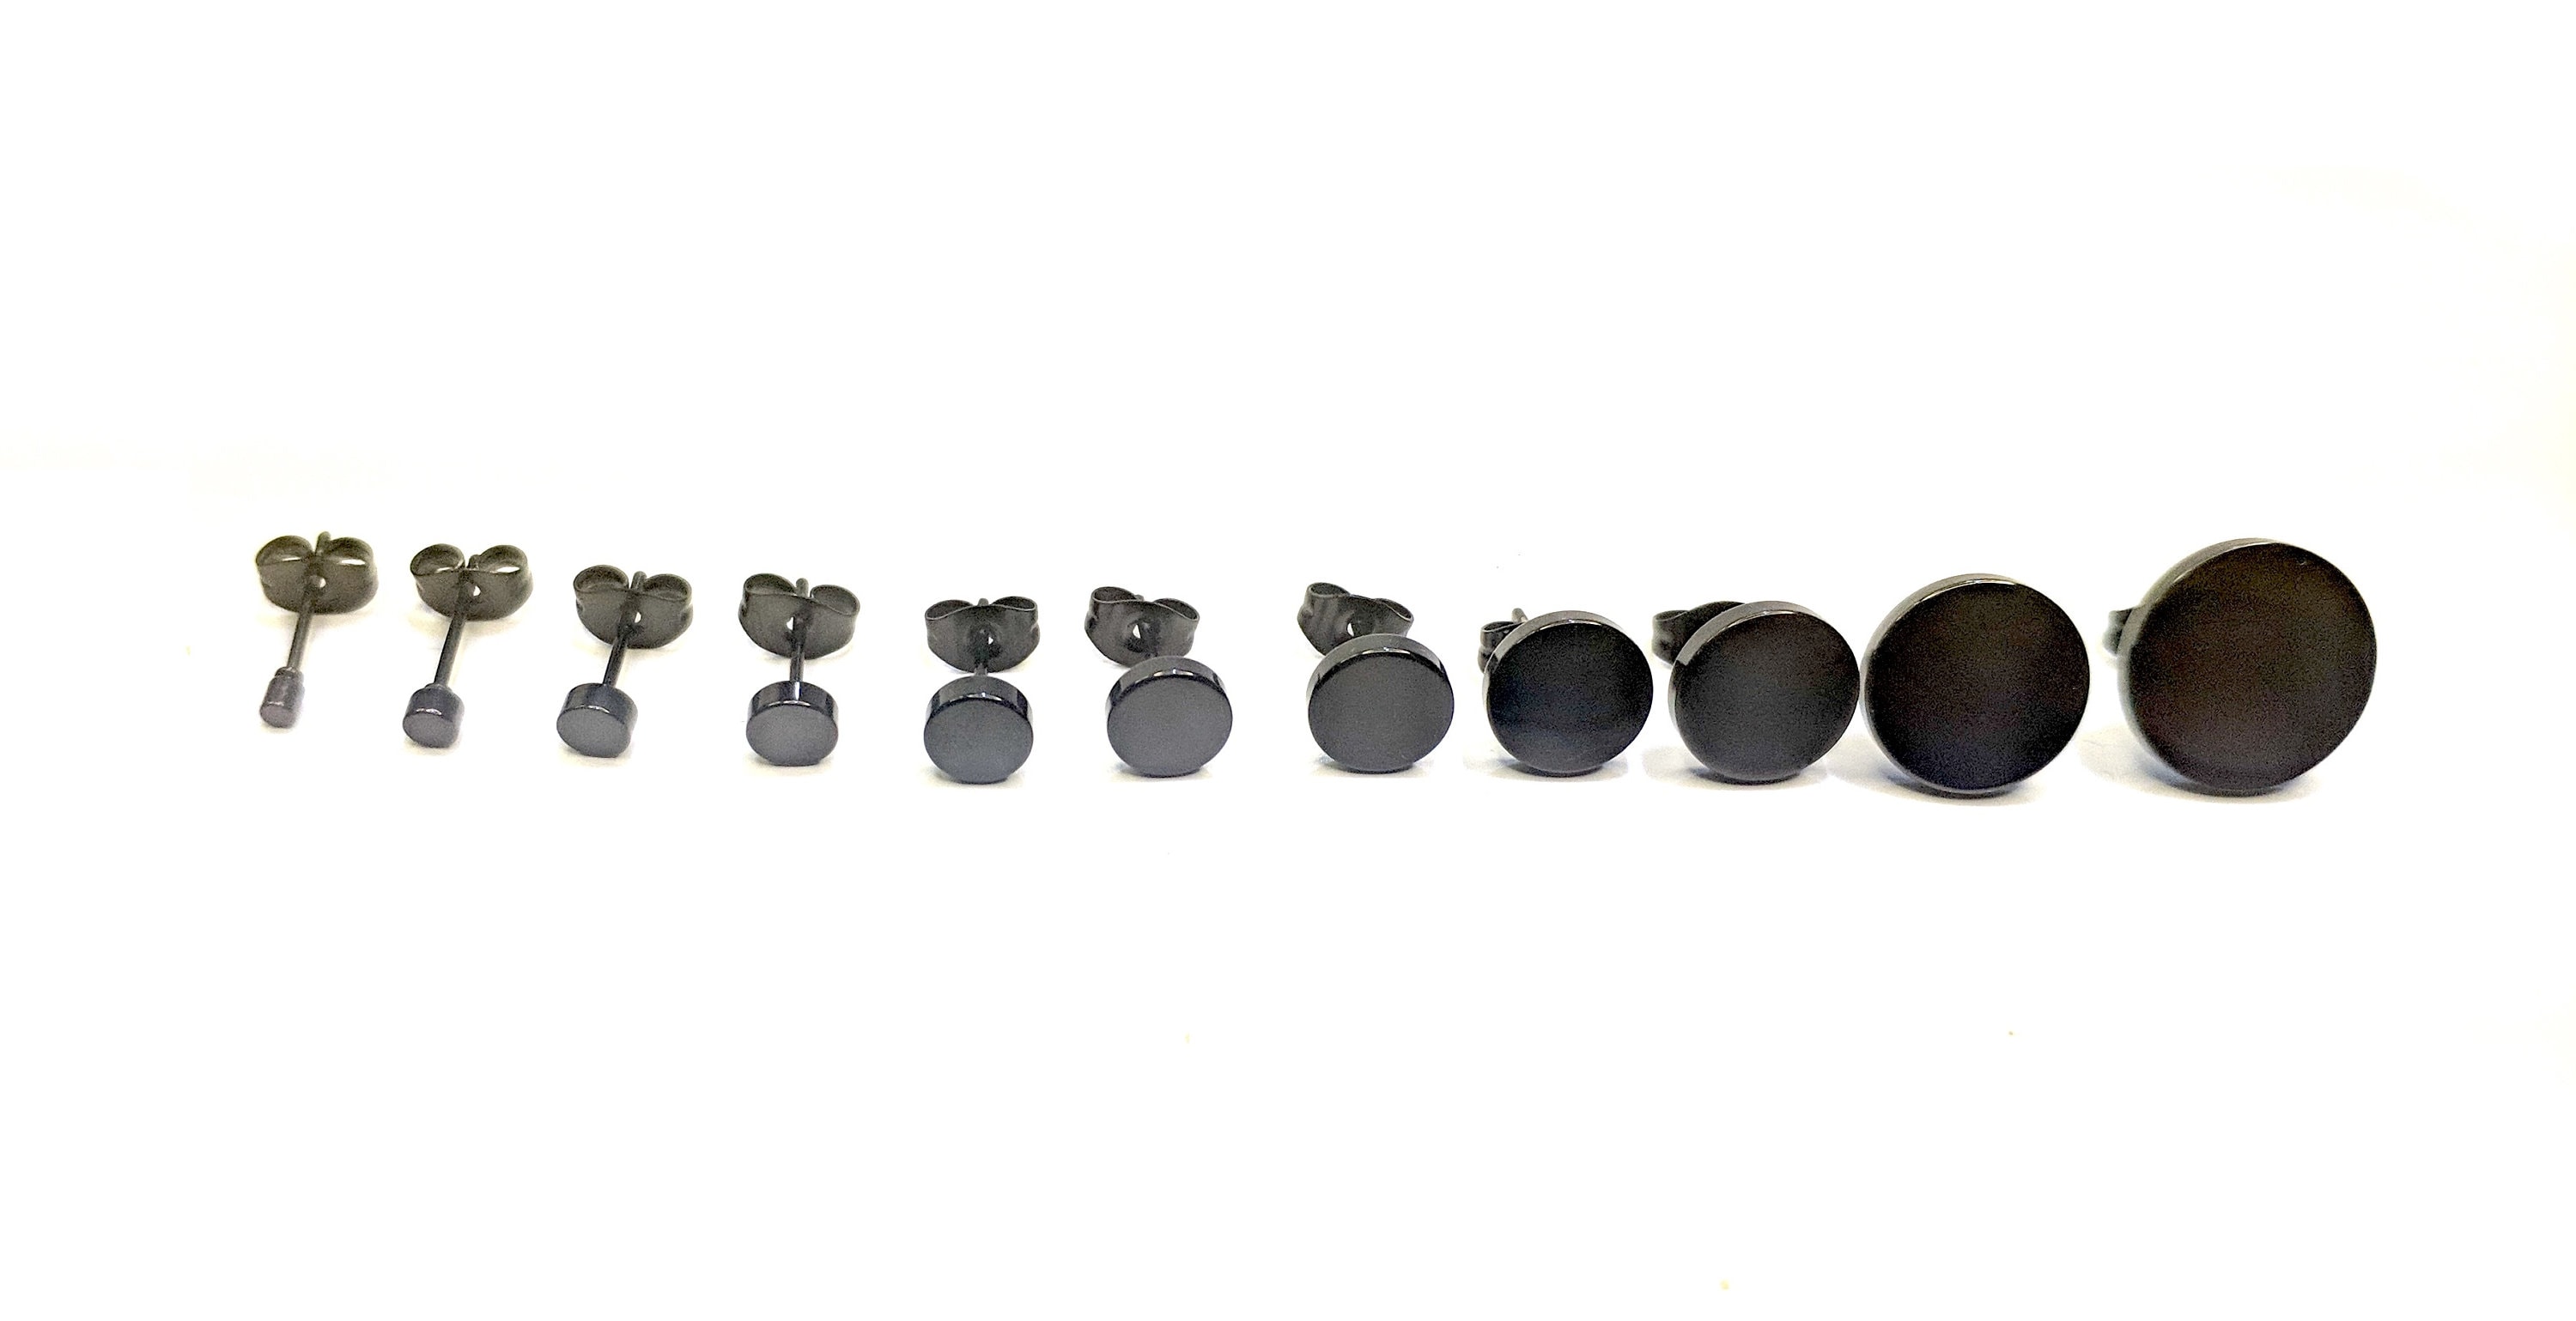 100pcs Plastic Nylon Discs for Earring Backs .6mm Gauge 